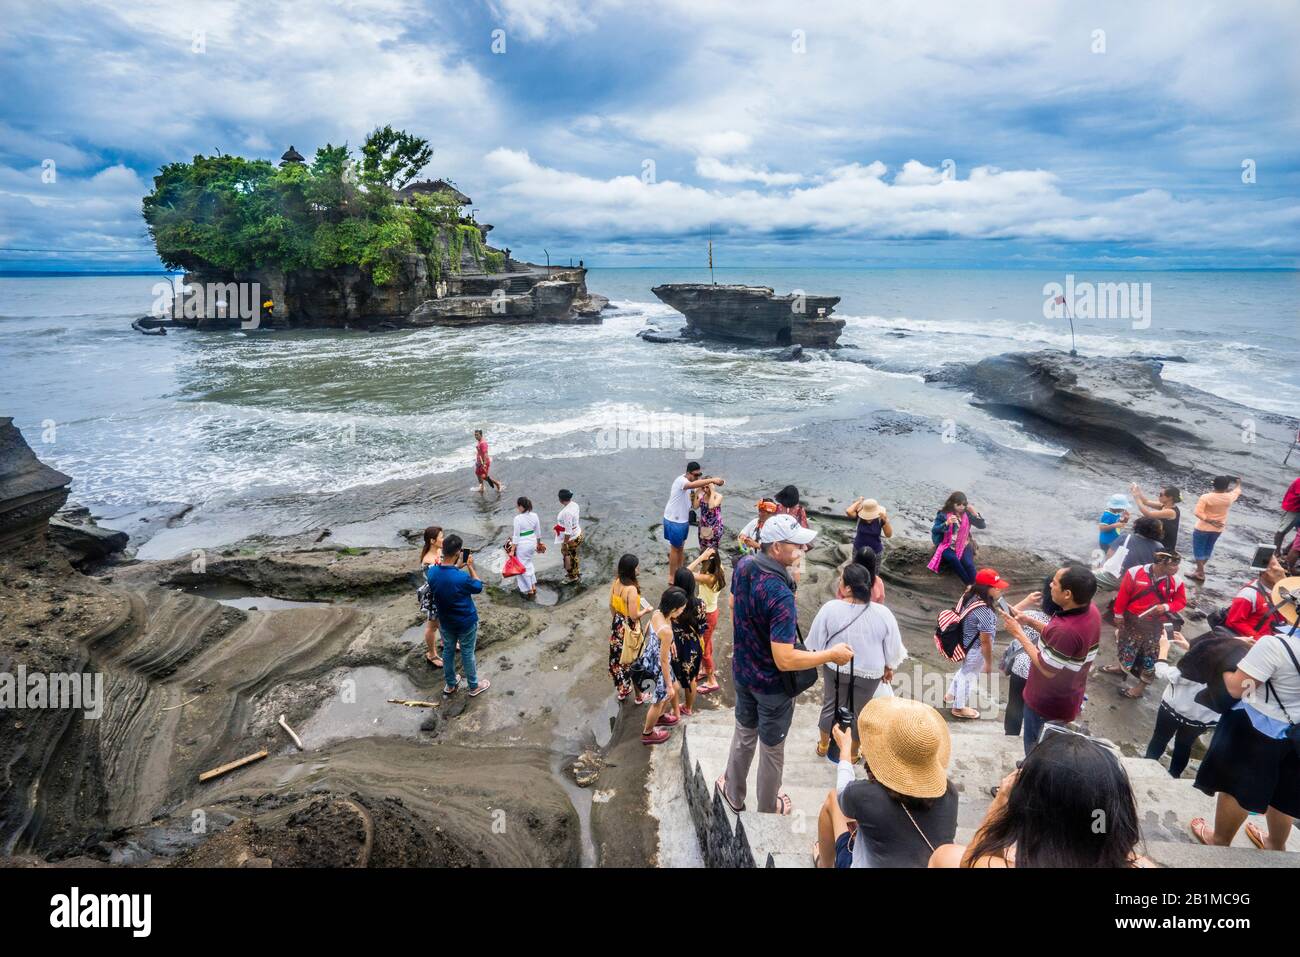 Besucher von Tanah Lot, einer Felsformation vor der indonesischen Insel Bali, die Heimat eines alten Hindu-Pilgertempels Pura Tanah Lot, Bali, Indonesien Stockfoto